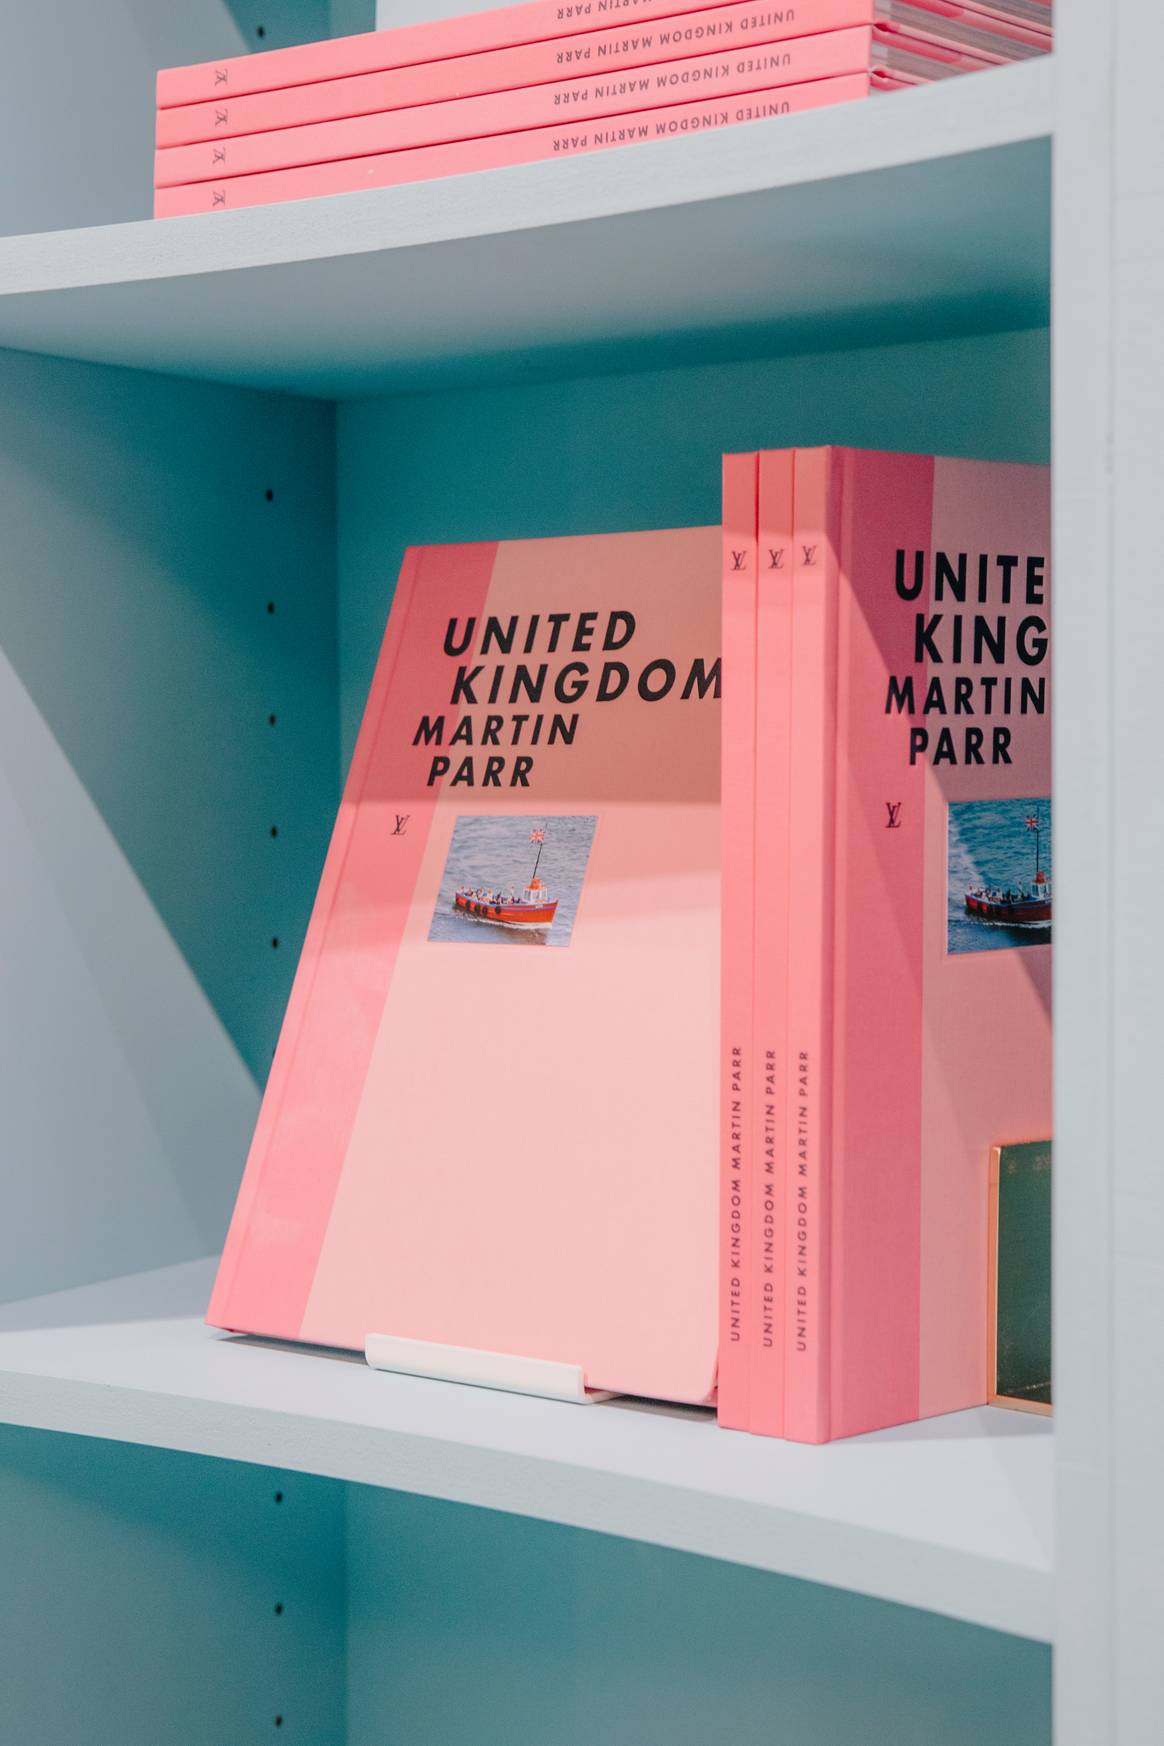 Louis Vuitton veröffentlicht einen Bildband über Großbritannien. Bild: Louis Vuitton